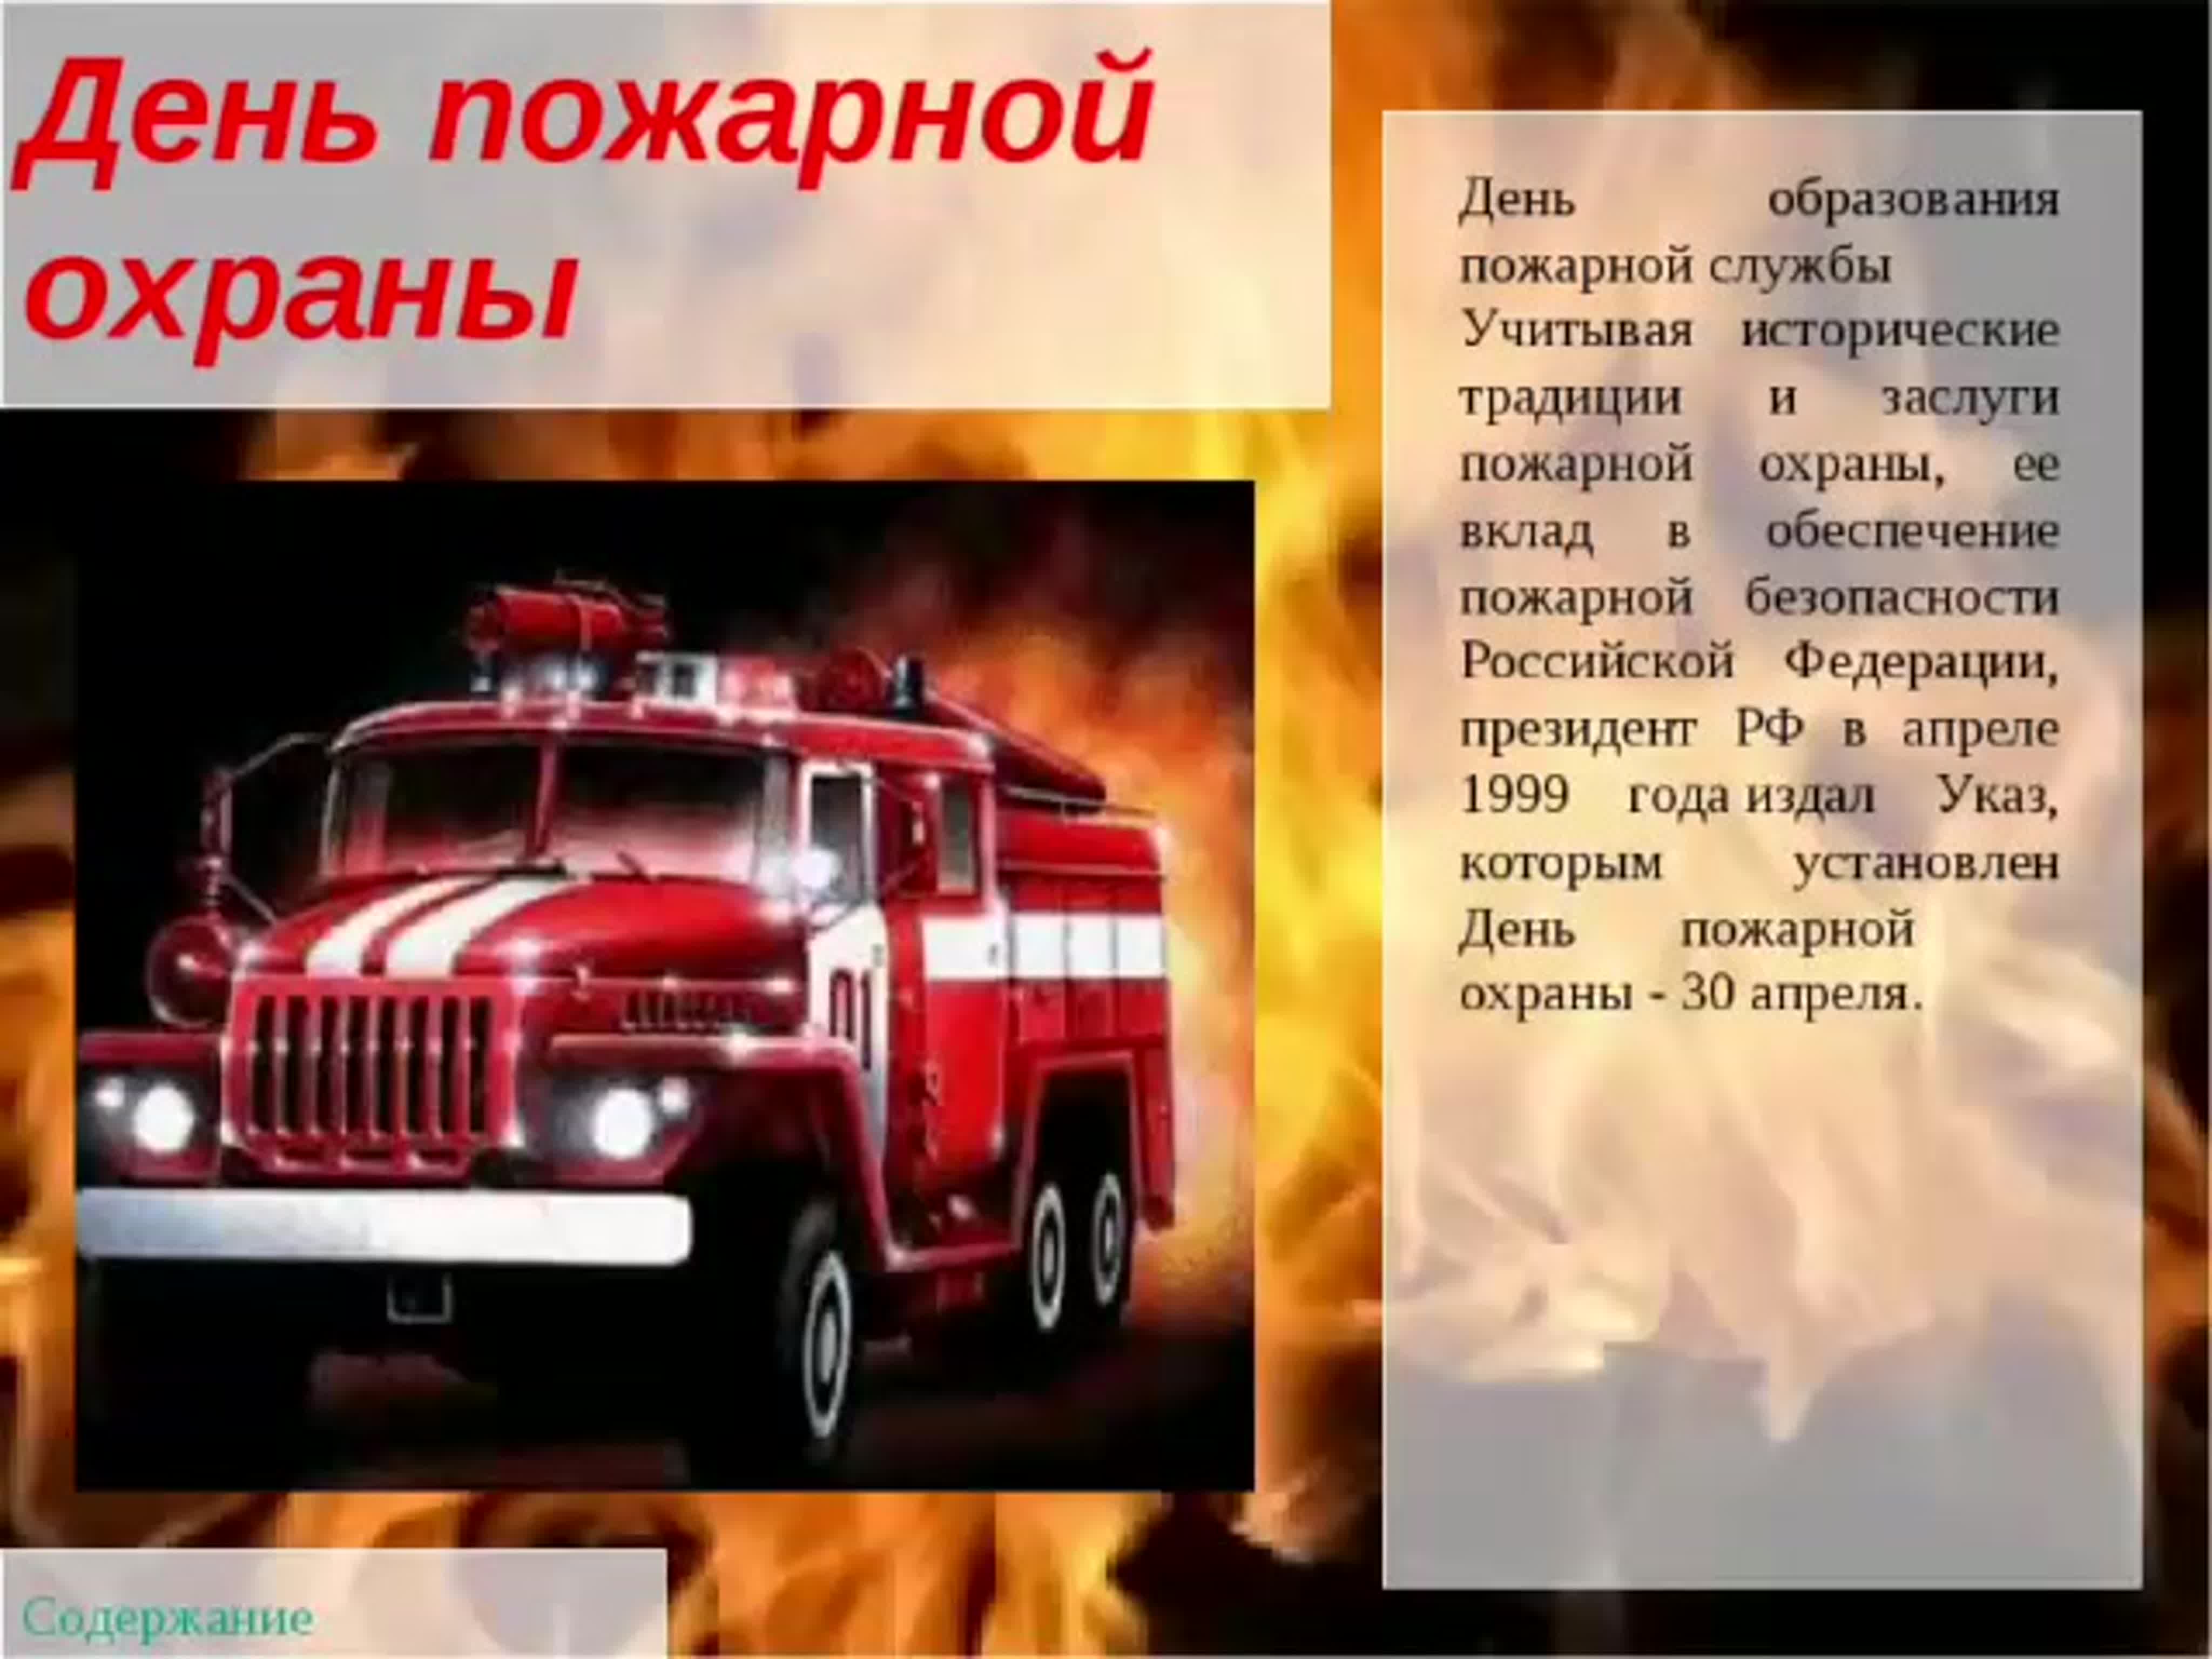 Тема пожарная служба